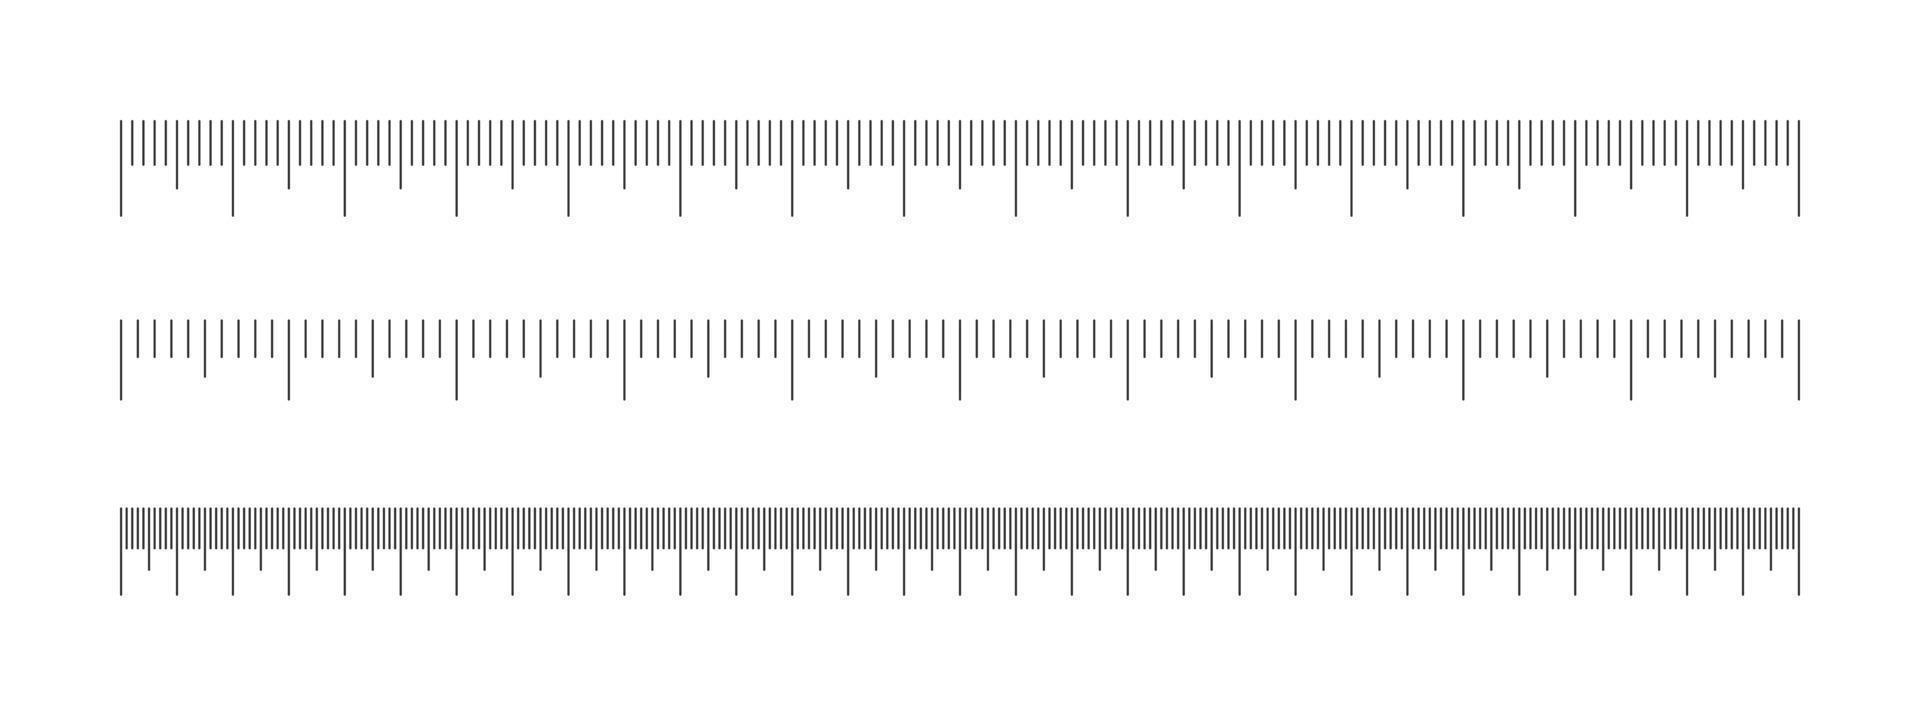 escala de regla colocar. horizontal medición gráfico con centímetros y milímetros margen. distancia, altura o longitud medición herramienta vector